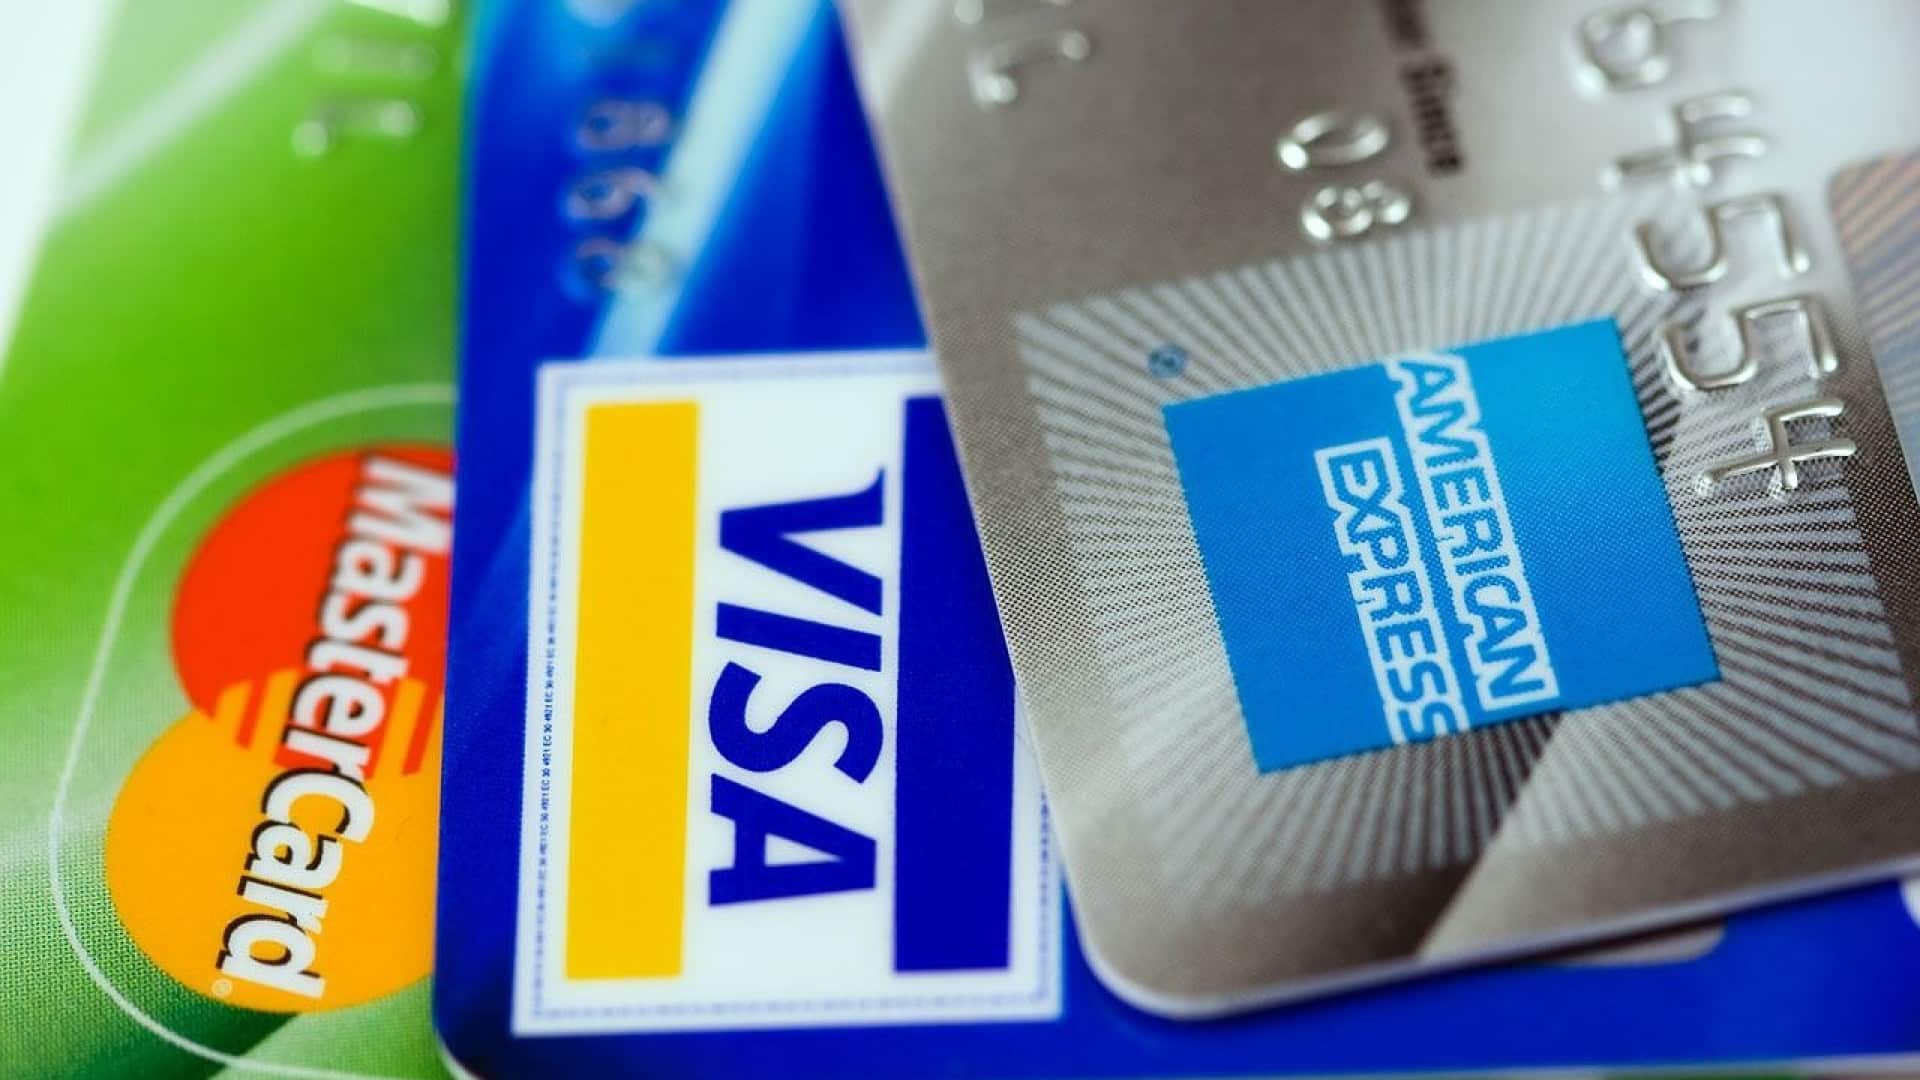 Quels sont les différents types de cartes bancaires disponibles auprès des banques ?